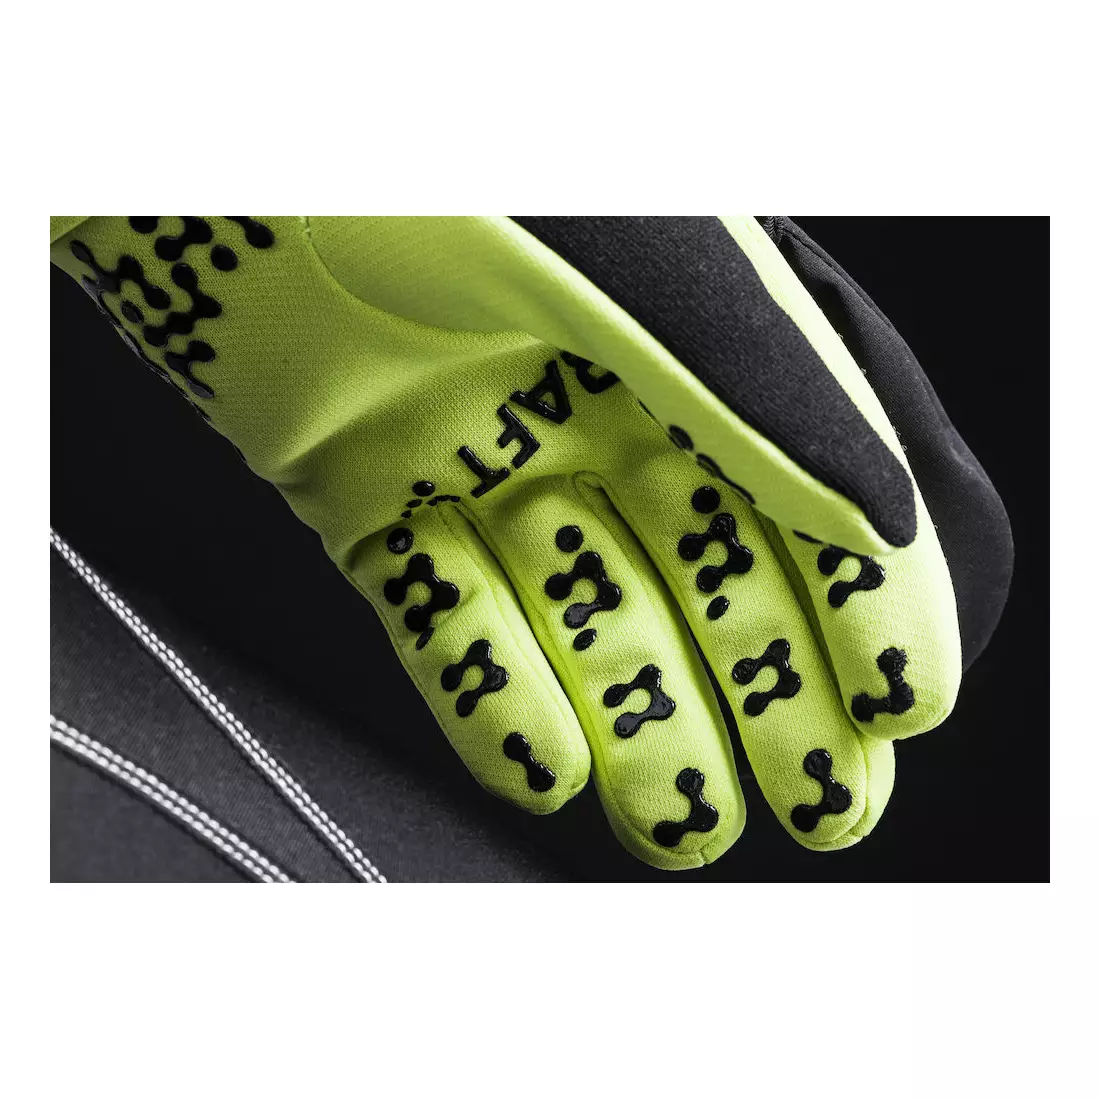 Hybridní rukavice CRAFT KEEP WARM 1903014-2430